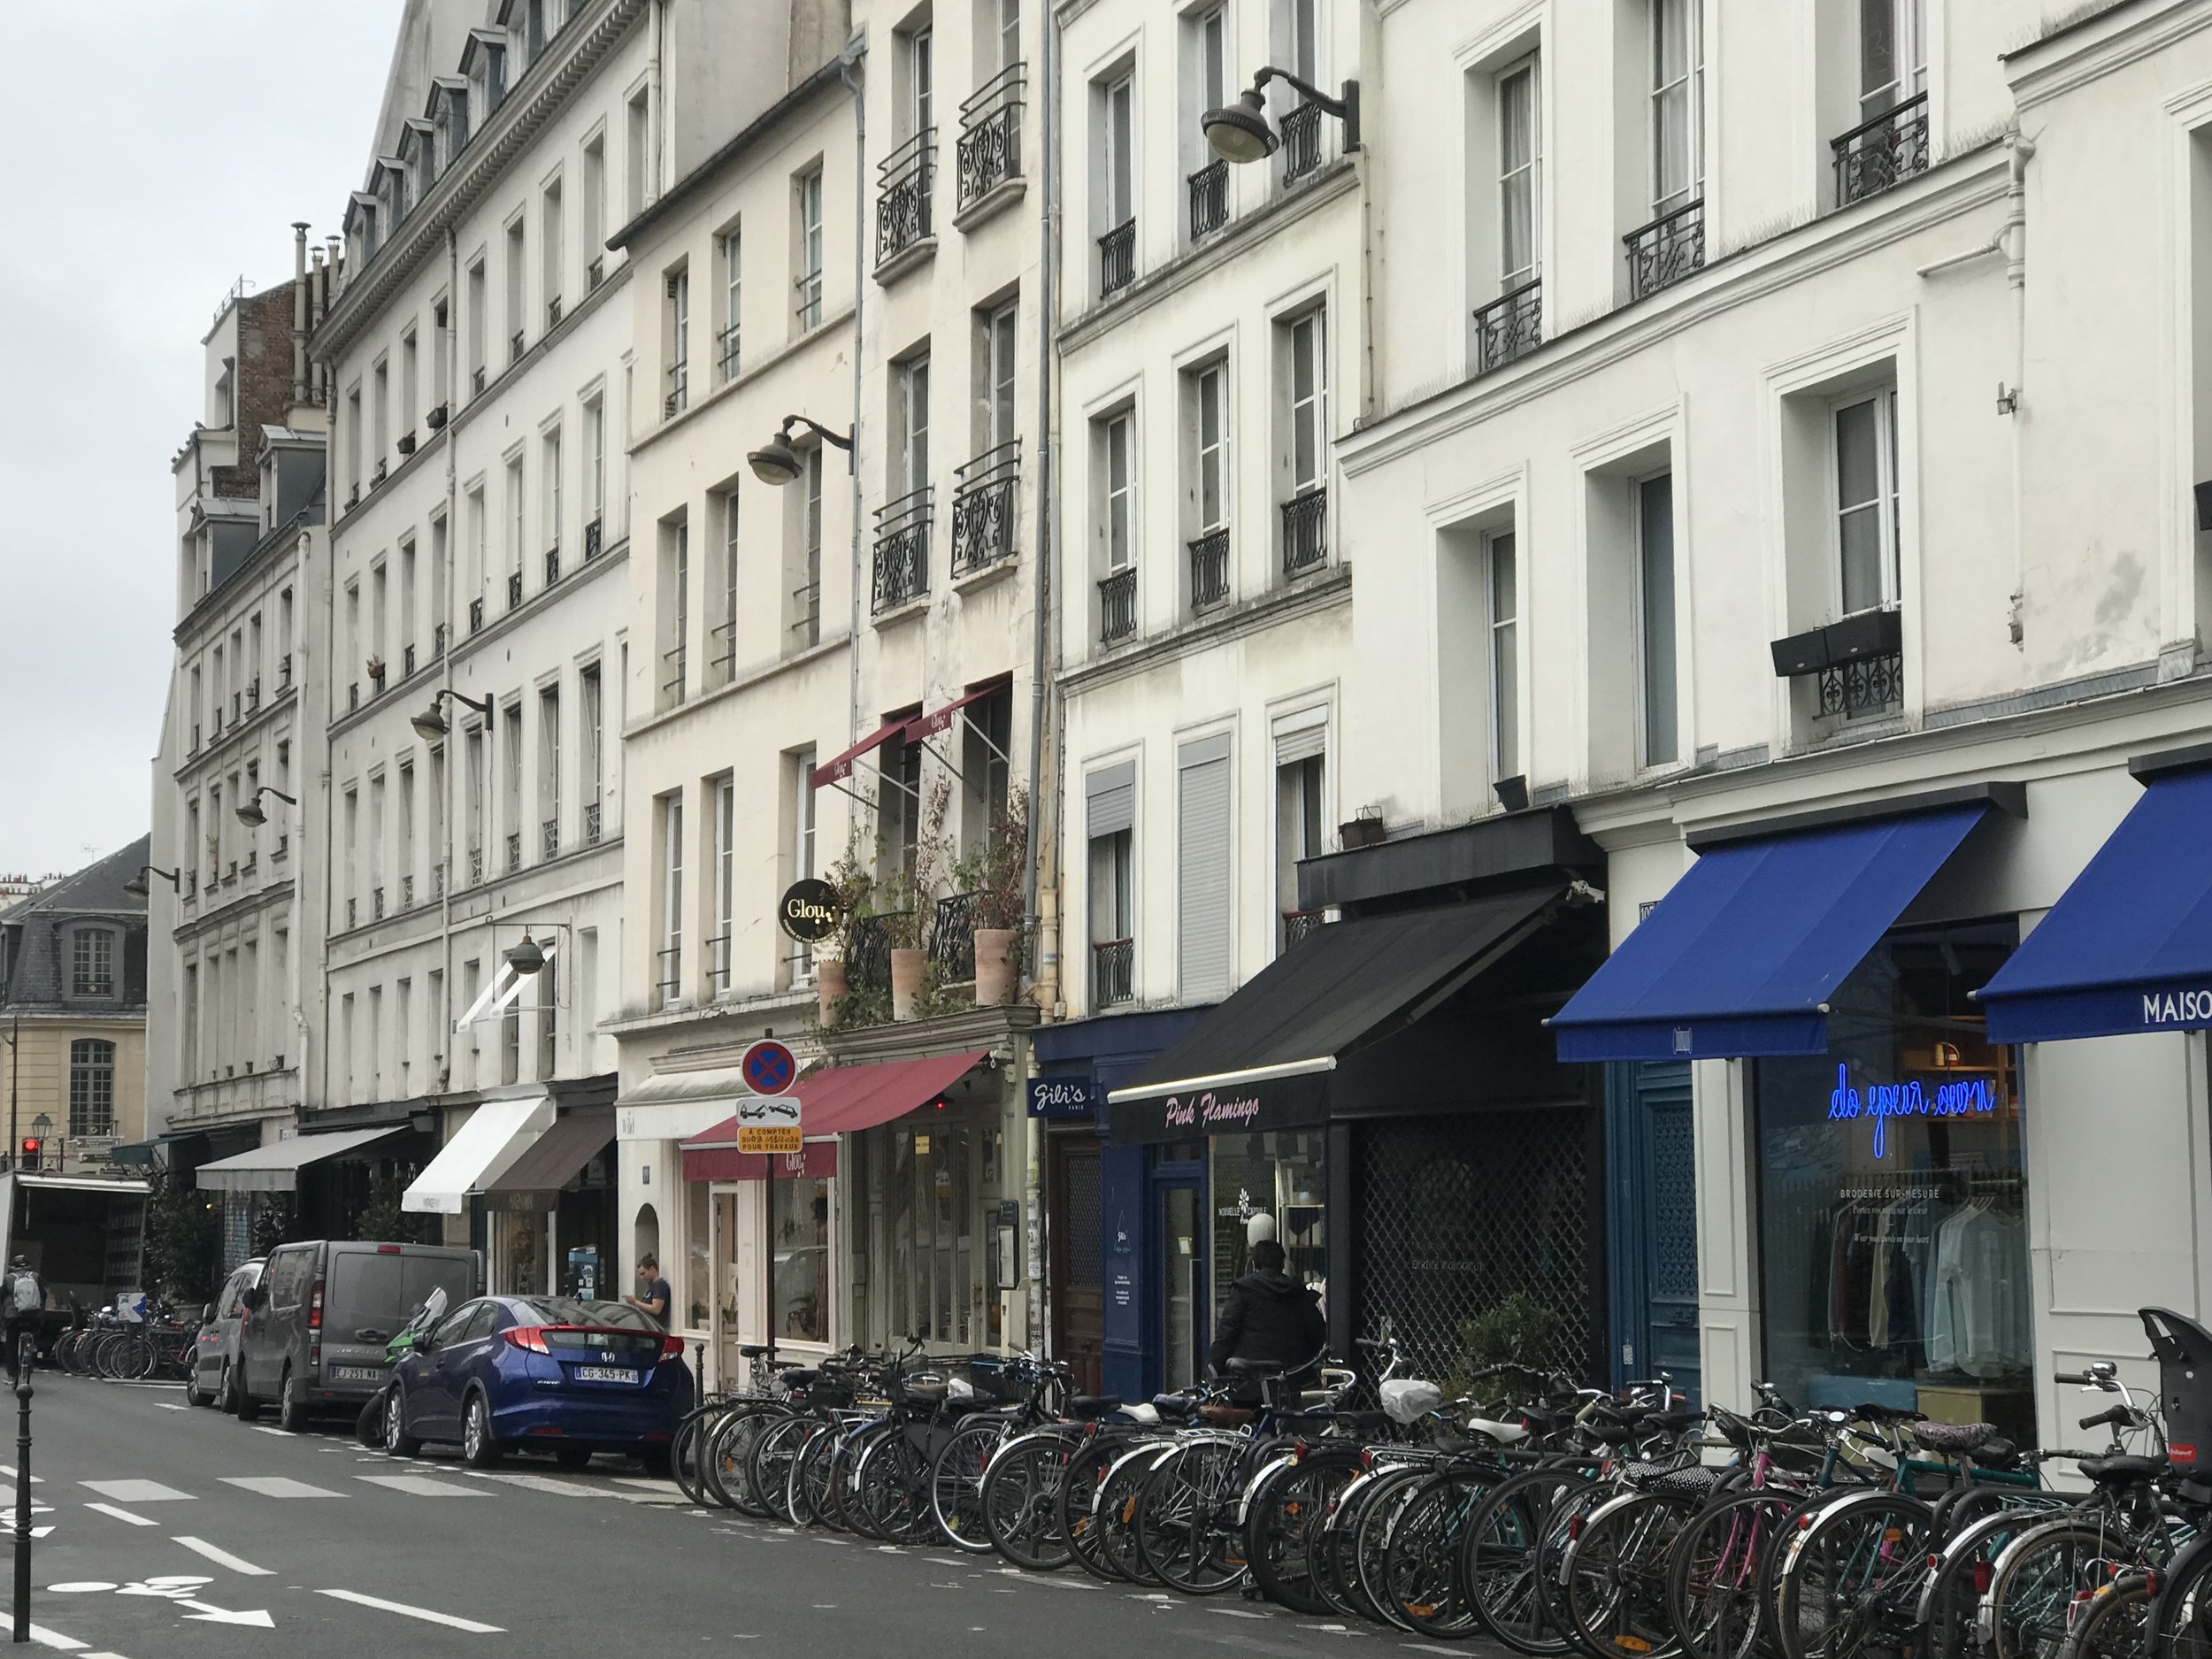 The Frankie Shop: 14 rue Saint Claude 75003 Paris